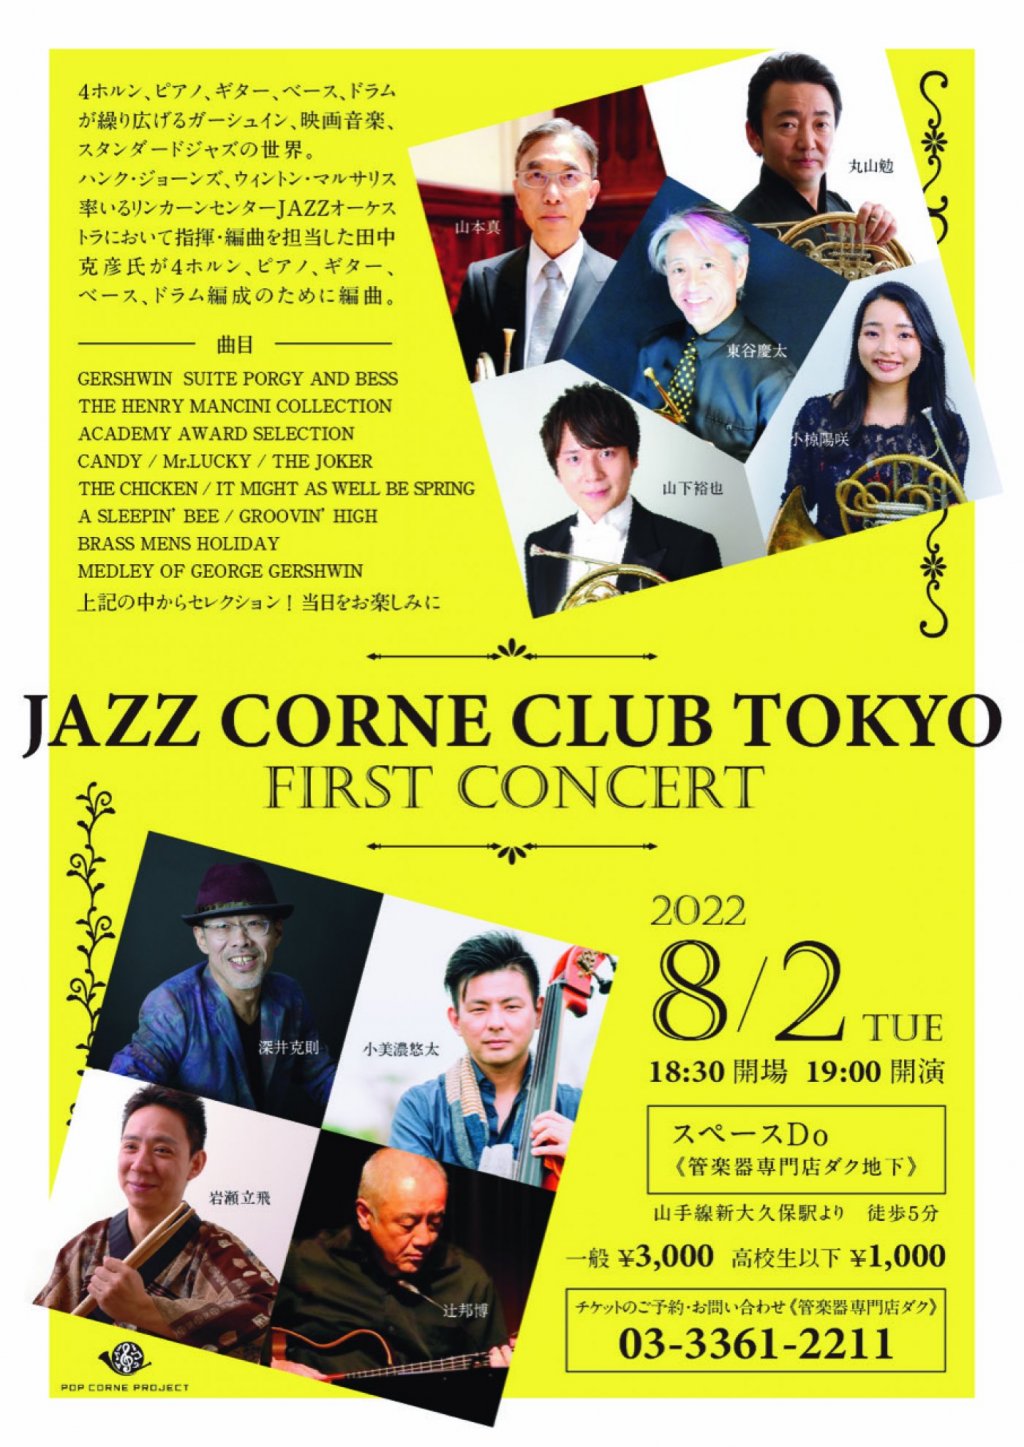 JAZZ CORNE CLUB TOKYO FIRST CONCERT